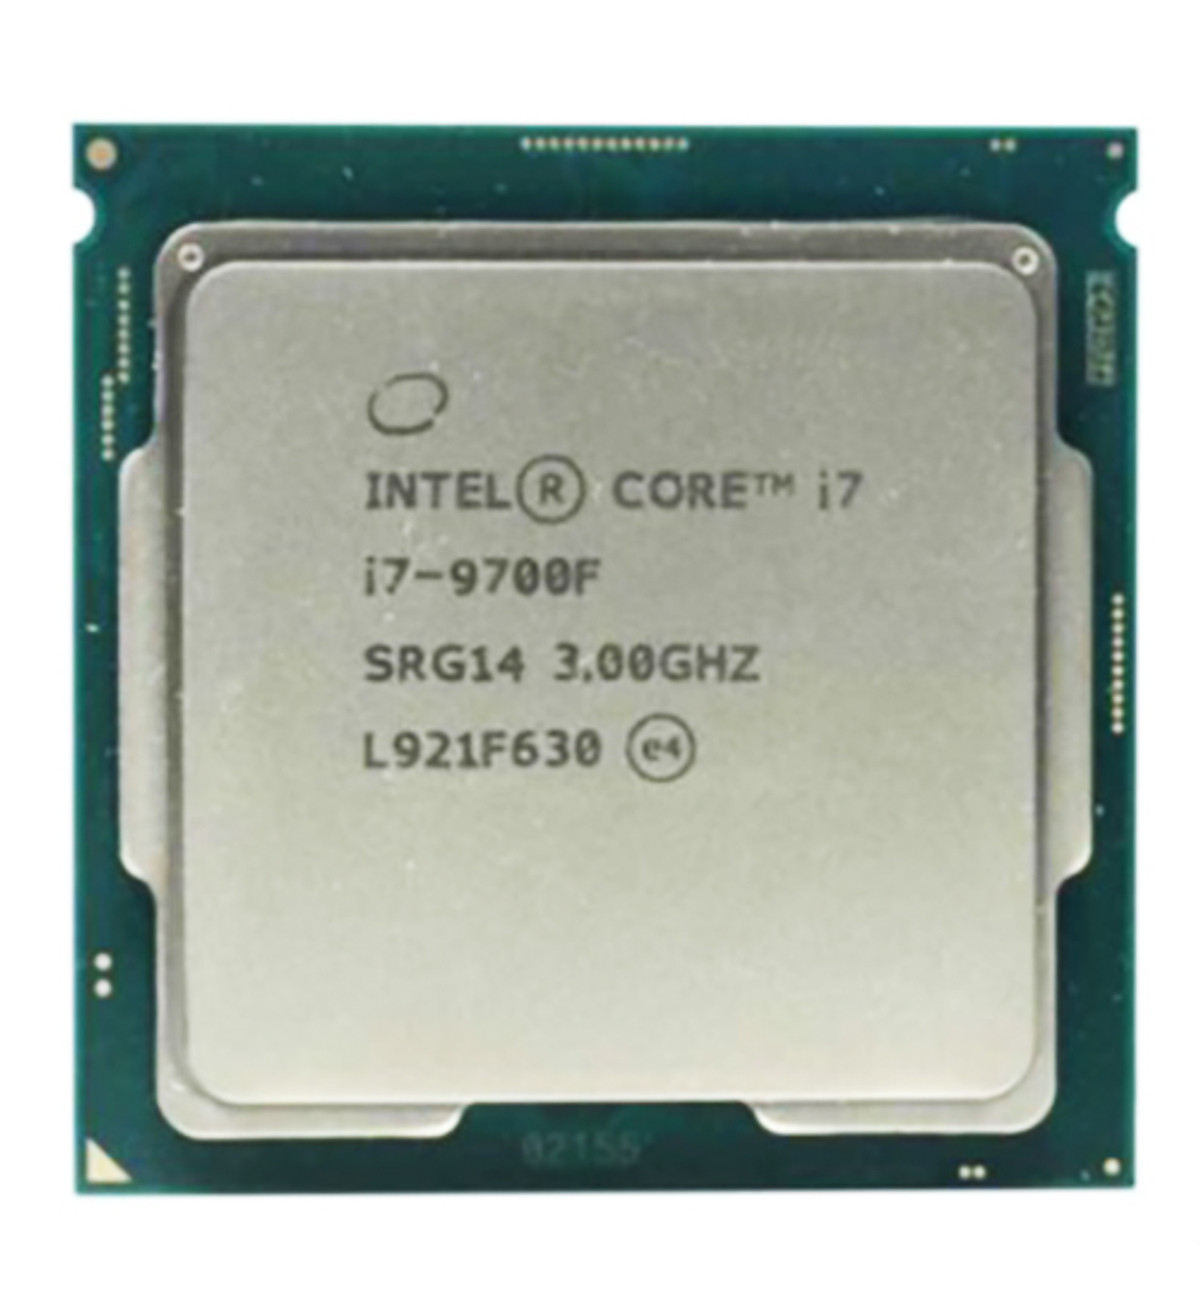 Bộ Vi Xử Lý CPU Intel Core I7-9700F (3.00GHz, 12M, 8 Cores 8 Threads, Socket LGA1151-V2, Thế hệ 8, Không GPU) Tray chưa Fan - Hàng Chính Hãng